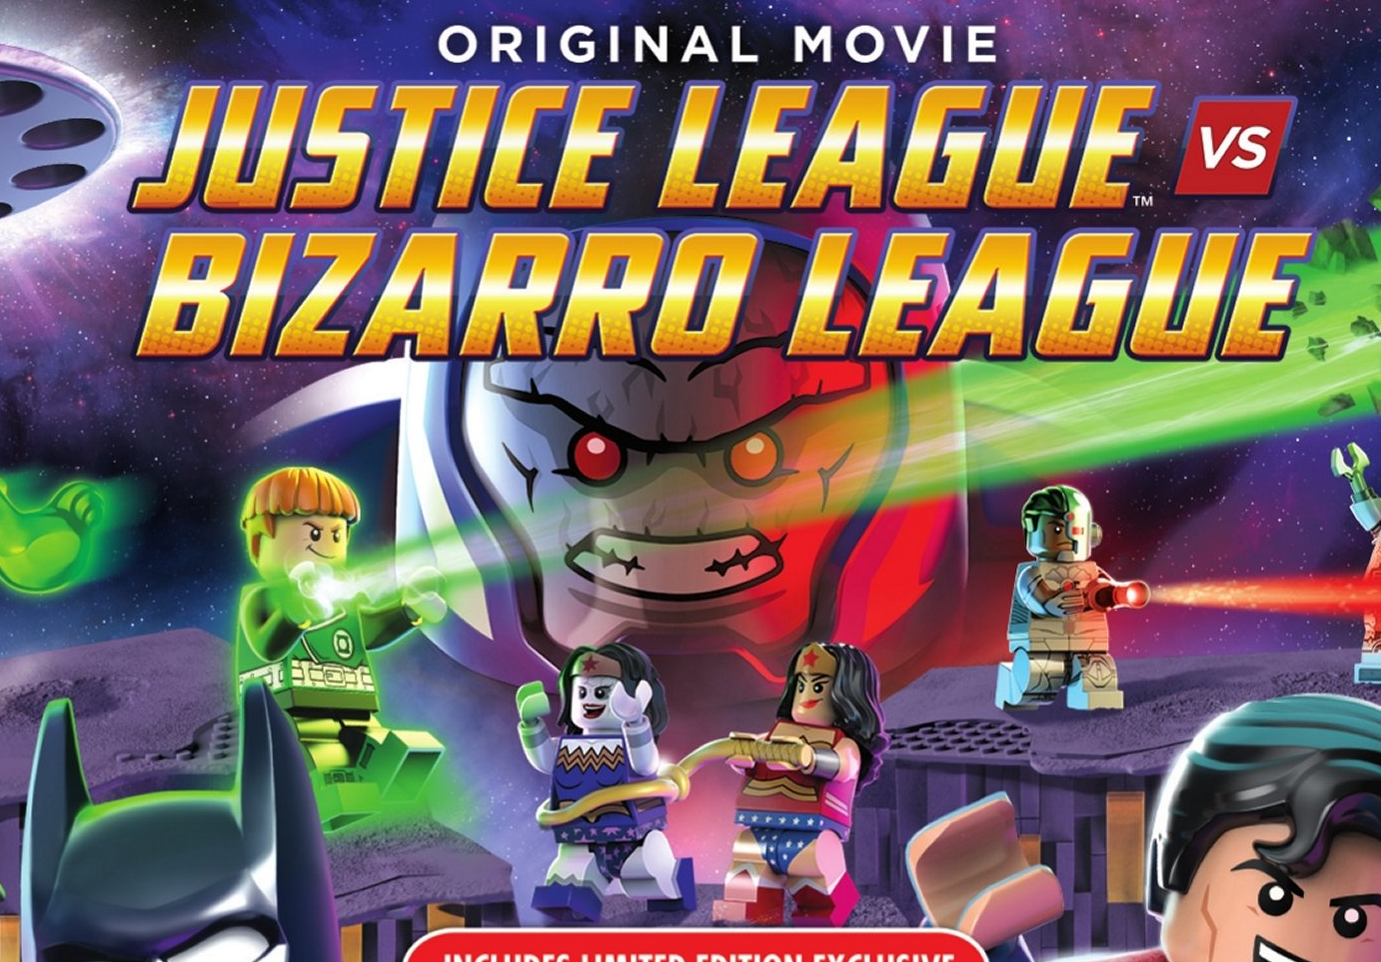 Lego DC Comics Super Heroes: Justice League Vs. Bizarro Leag Backgrounds on Wallpapers Vista